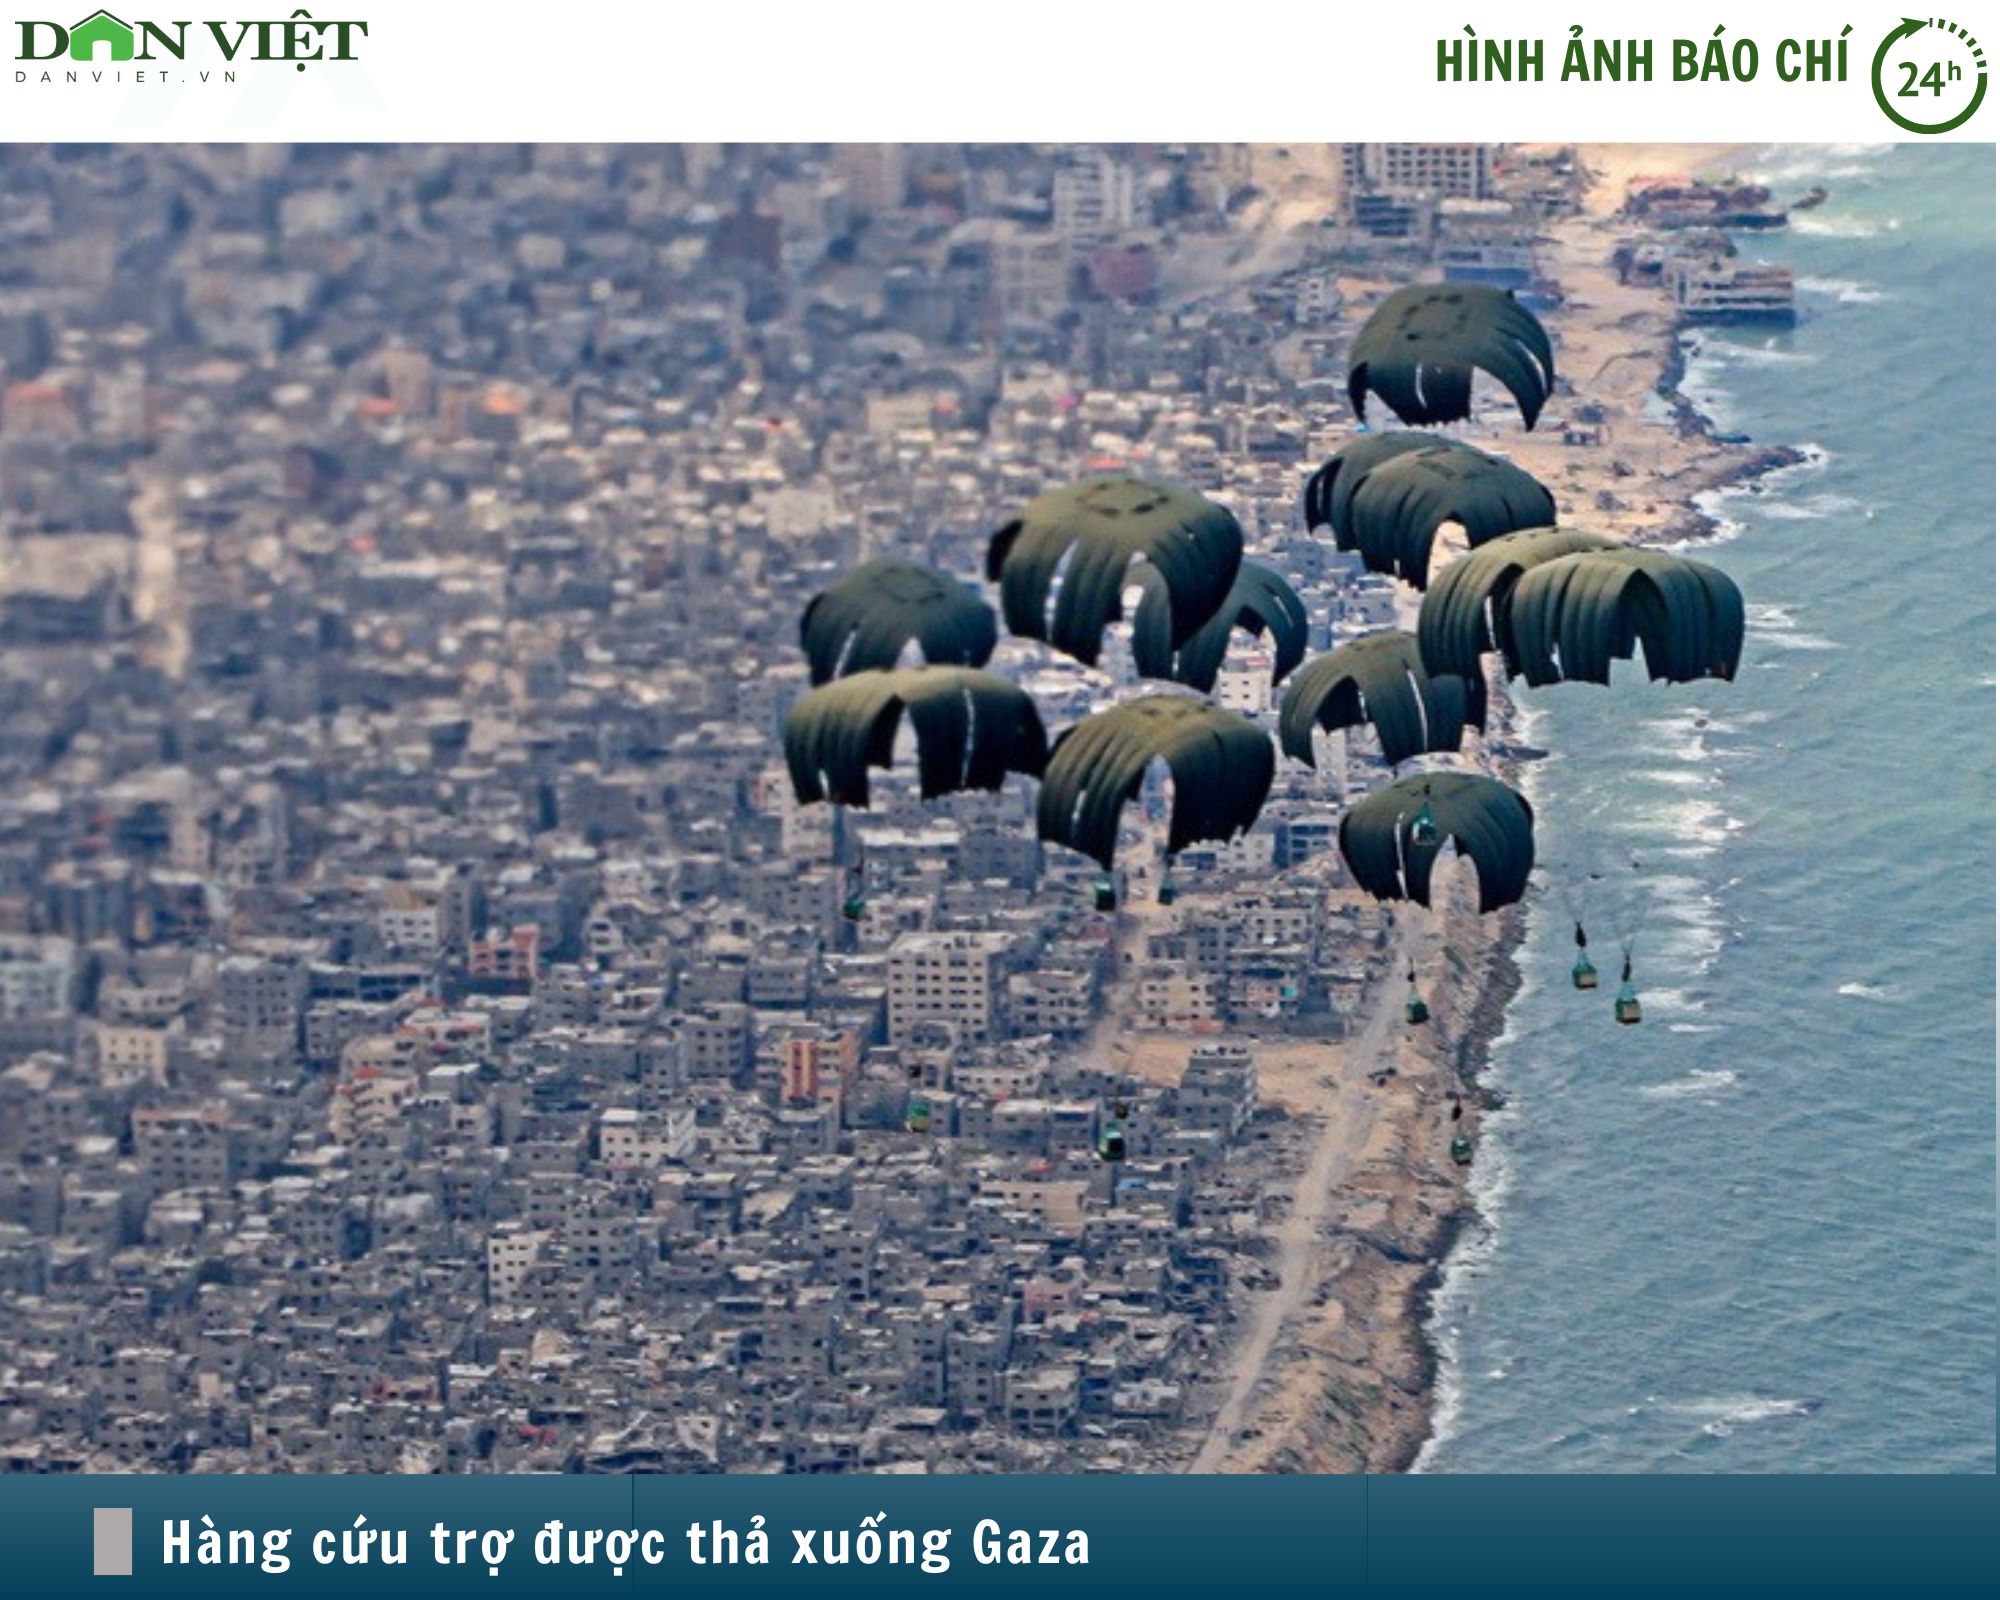 Hình ảnh báo chí 24h: Mỹ thả viện trợ xuống Gaza, 12 người chết đuối khi lấy hàng- Ảnh 1.